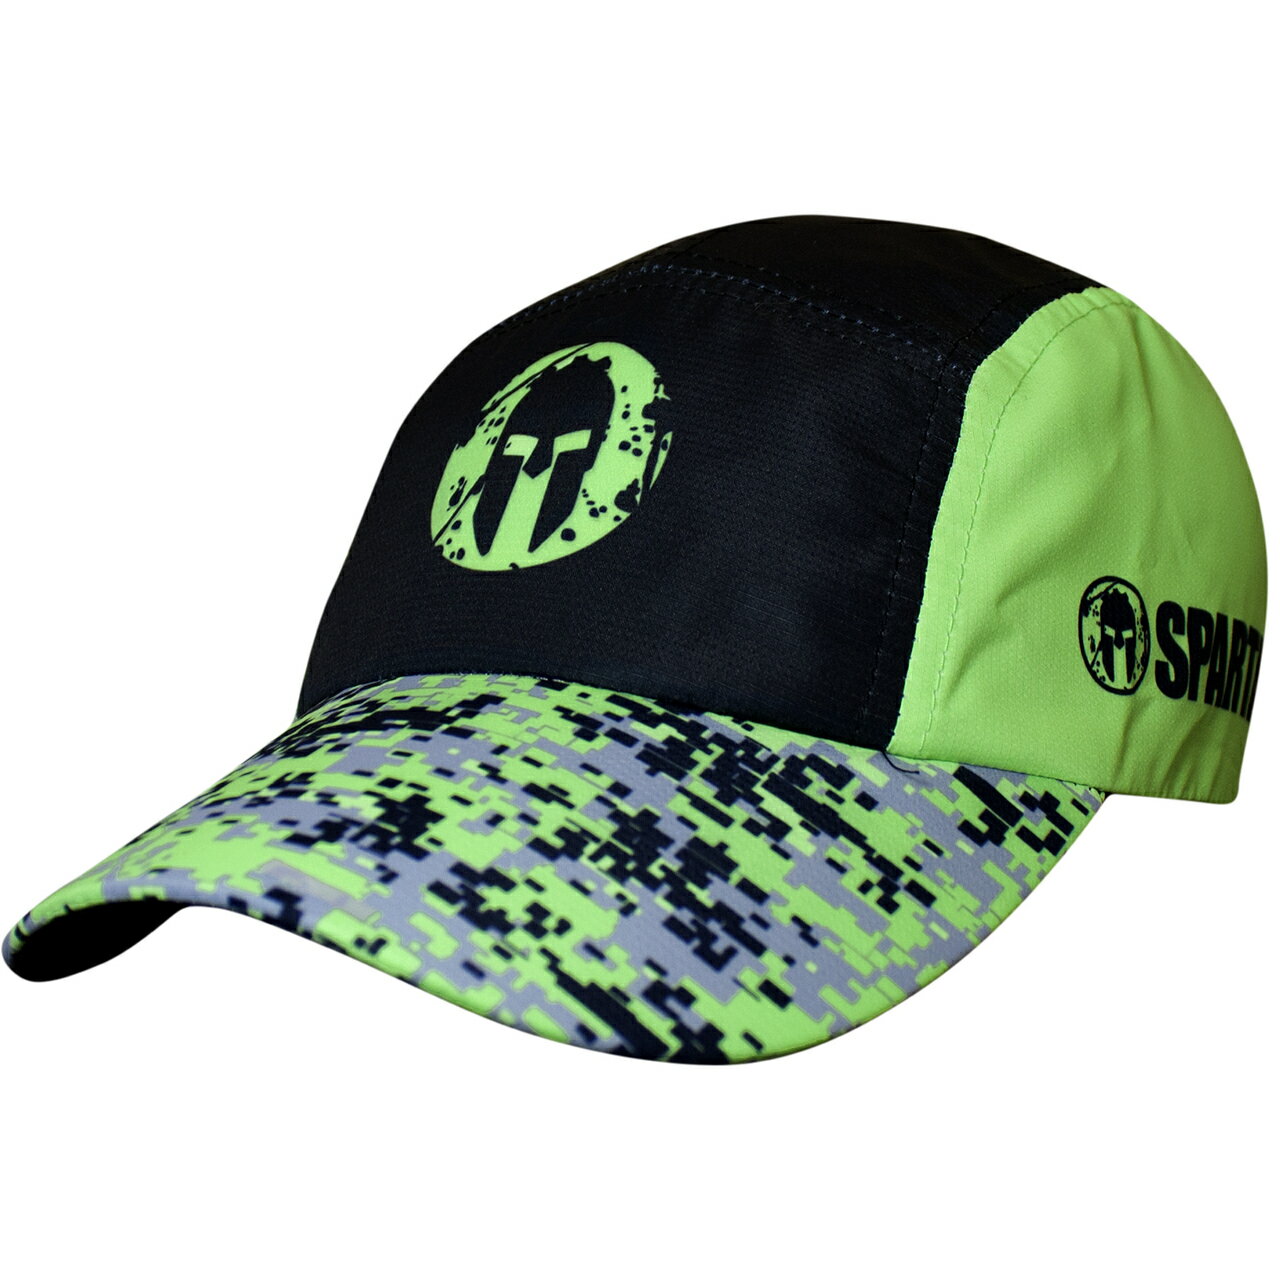 斯巴達障礙跑競賽(Spartan Race)野獸賽偽裝黑綠色運動帽.HEADSWEATS汗淂(世界領導品牌)官方合作夥伴